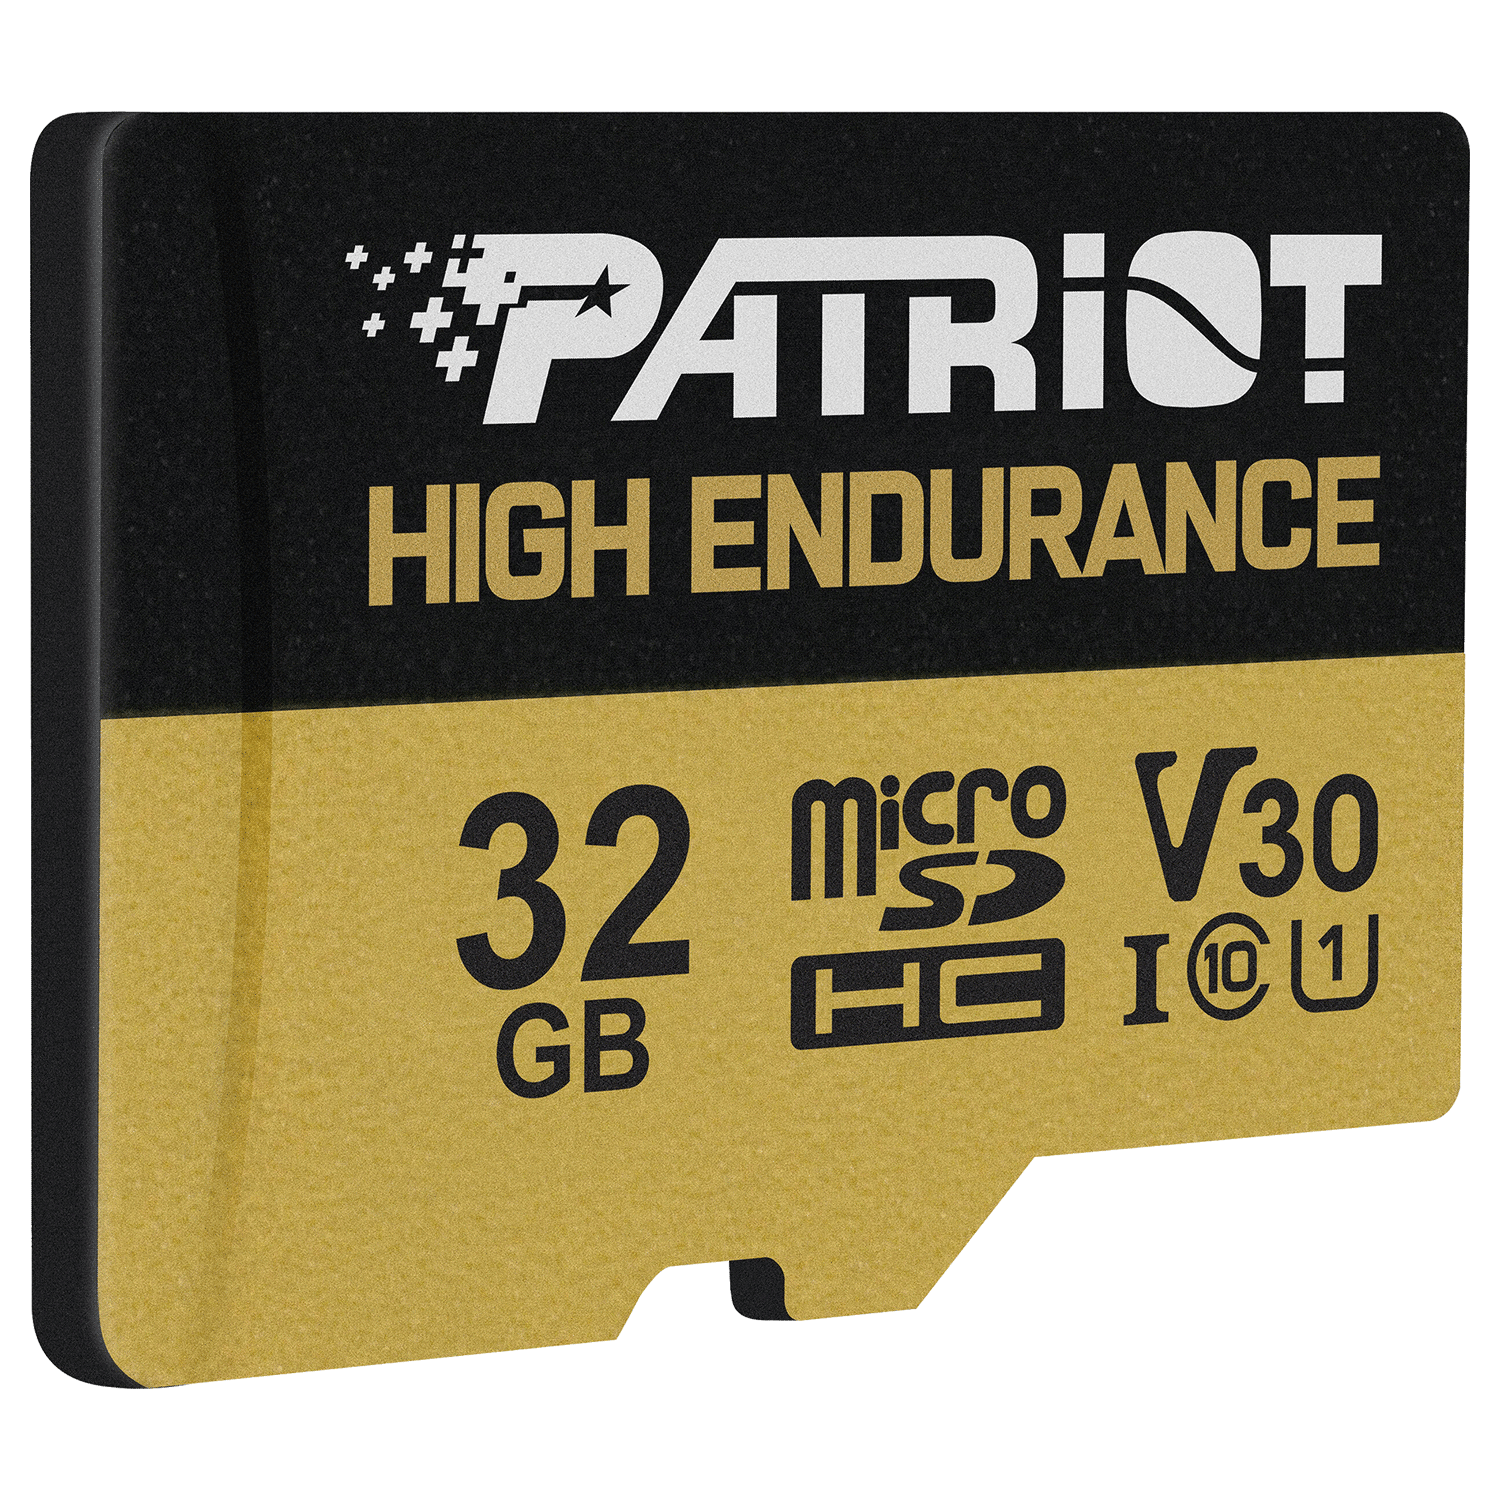 Cartão de Memória Micro SD Patriot High Endurance V30 32GB / C10 / U1 - (PEF32GE31MCH)